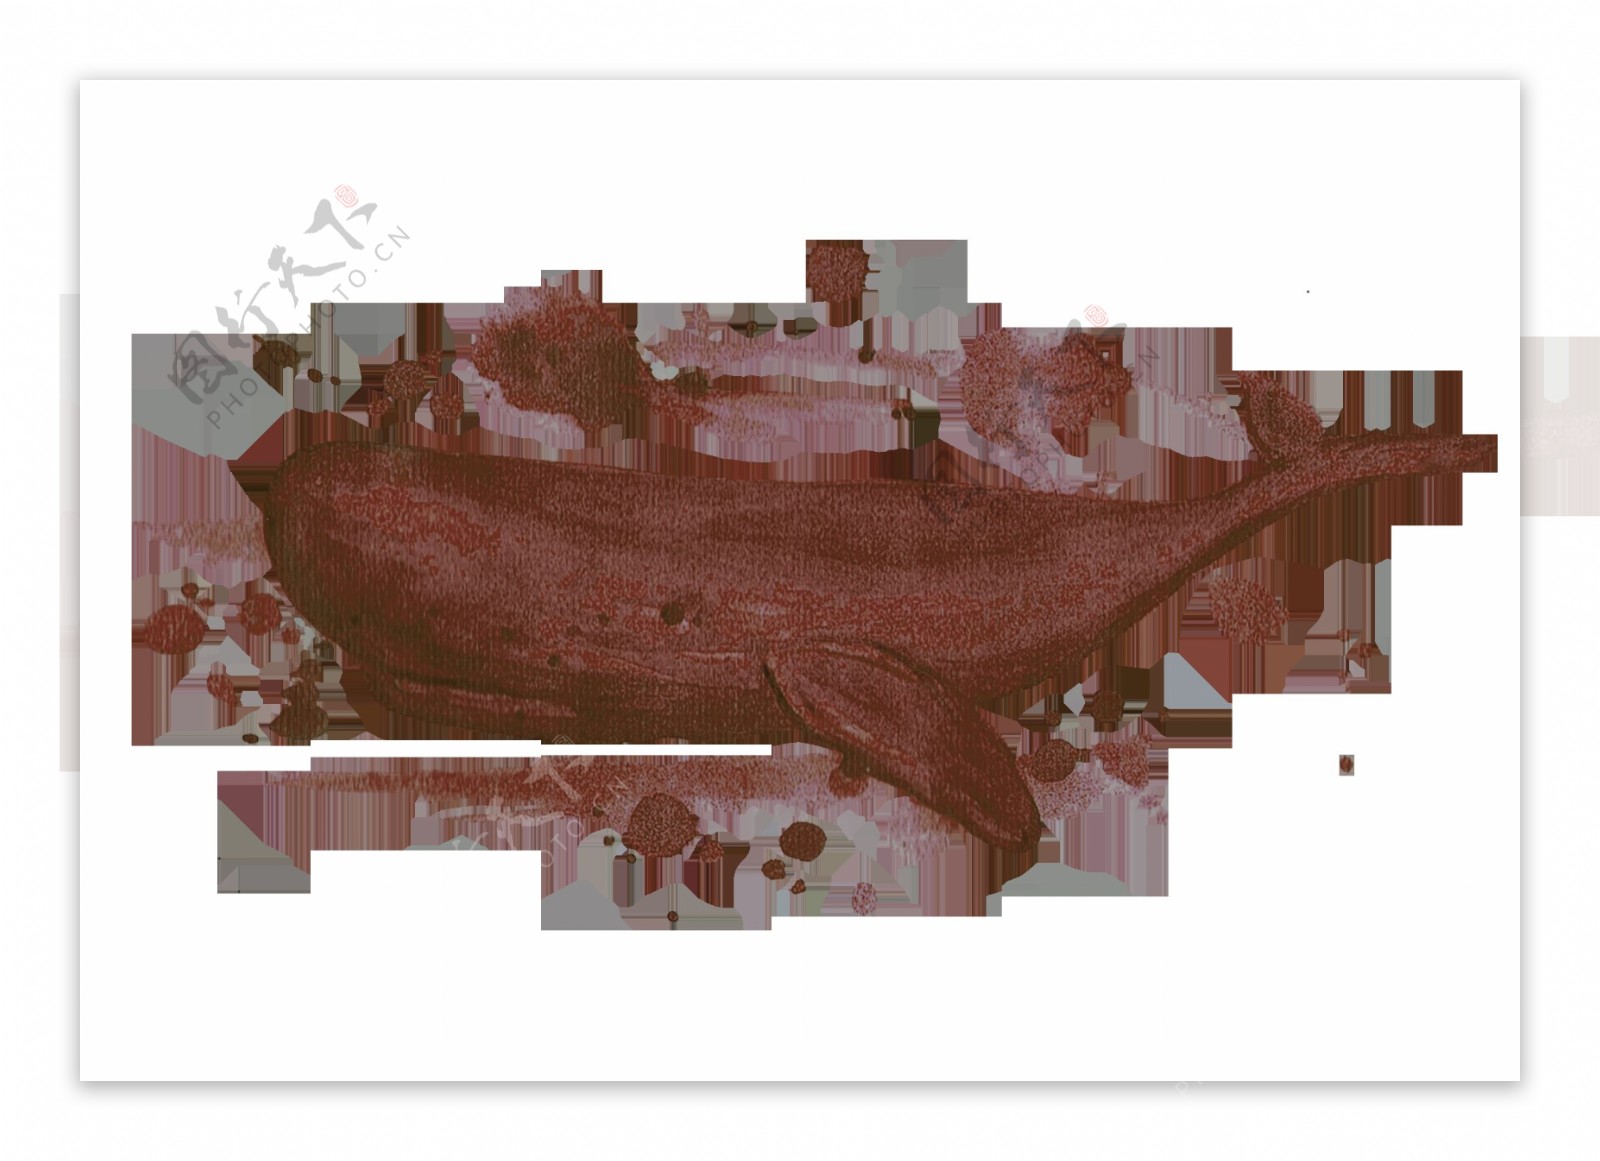 手绘水墨咖啡色鲸鱼动物装饰图案素材